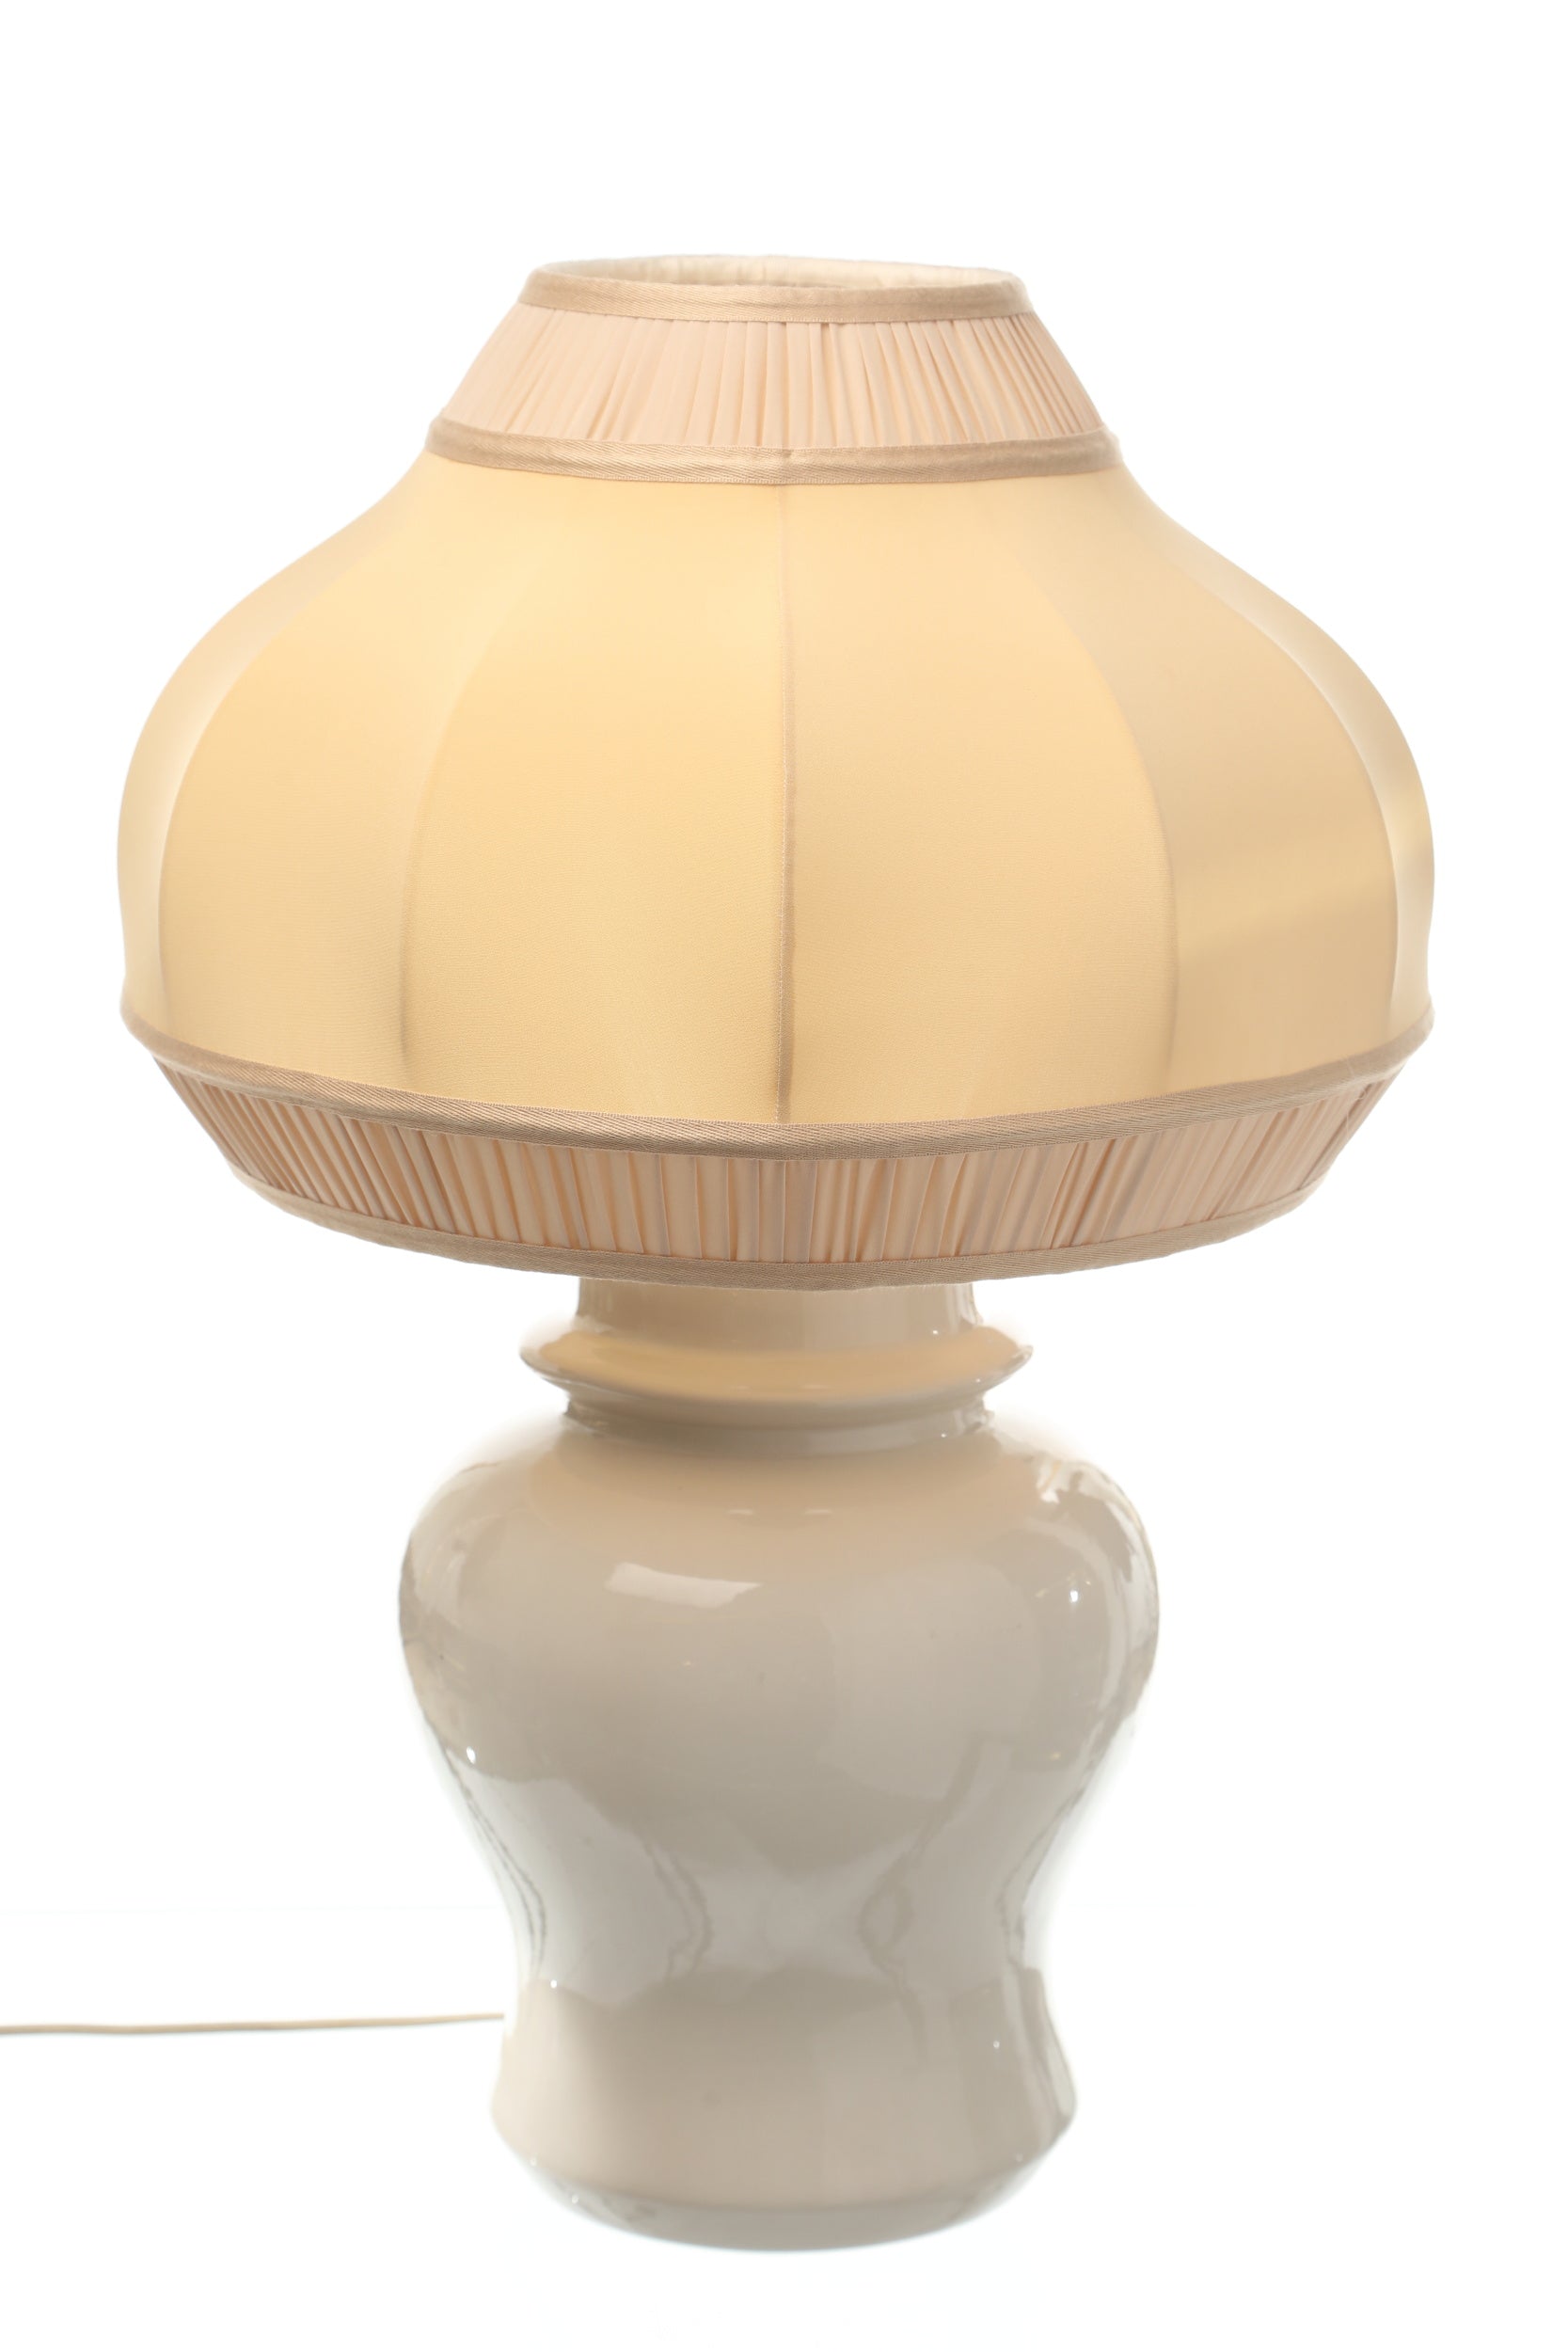 Tommaso Barbi ceramic lamp 9